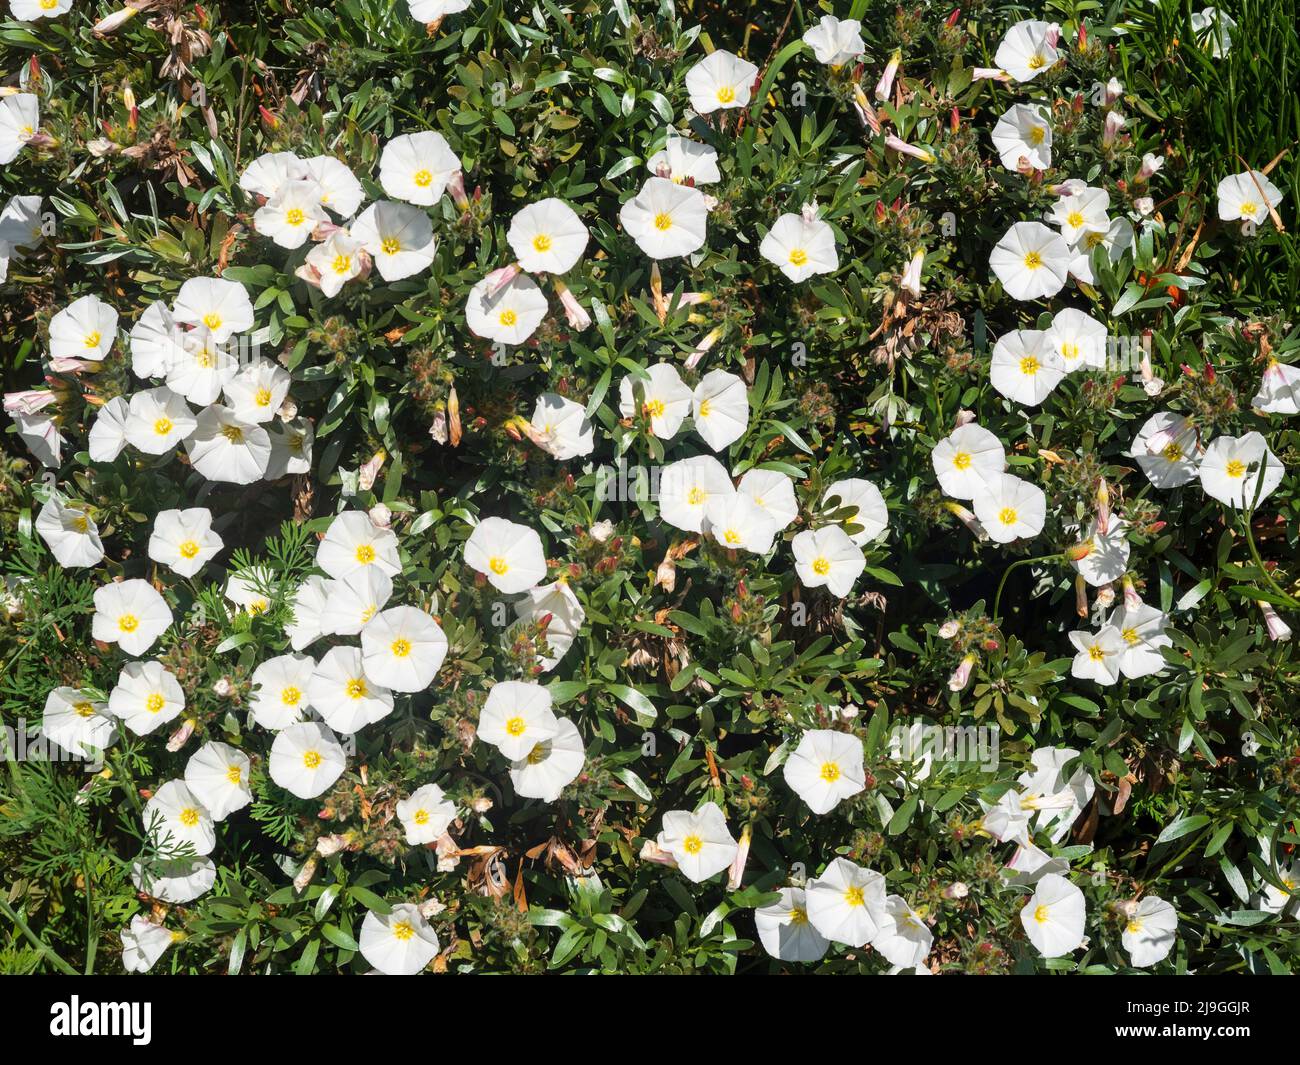 Flores blancas, de principios de verano del arbusto foliado plateado, Convolvulus cneorum Foto de stock